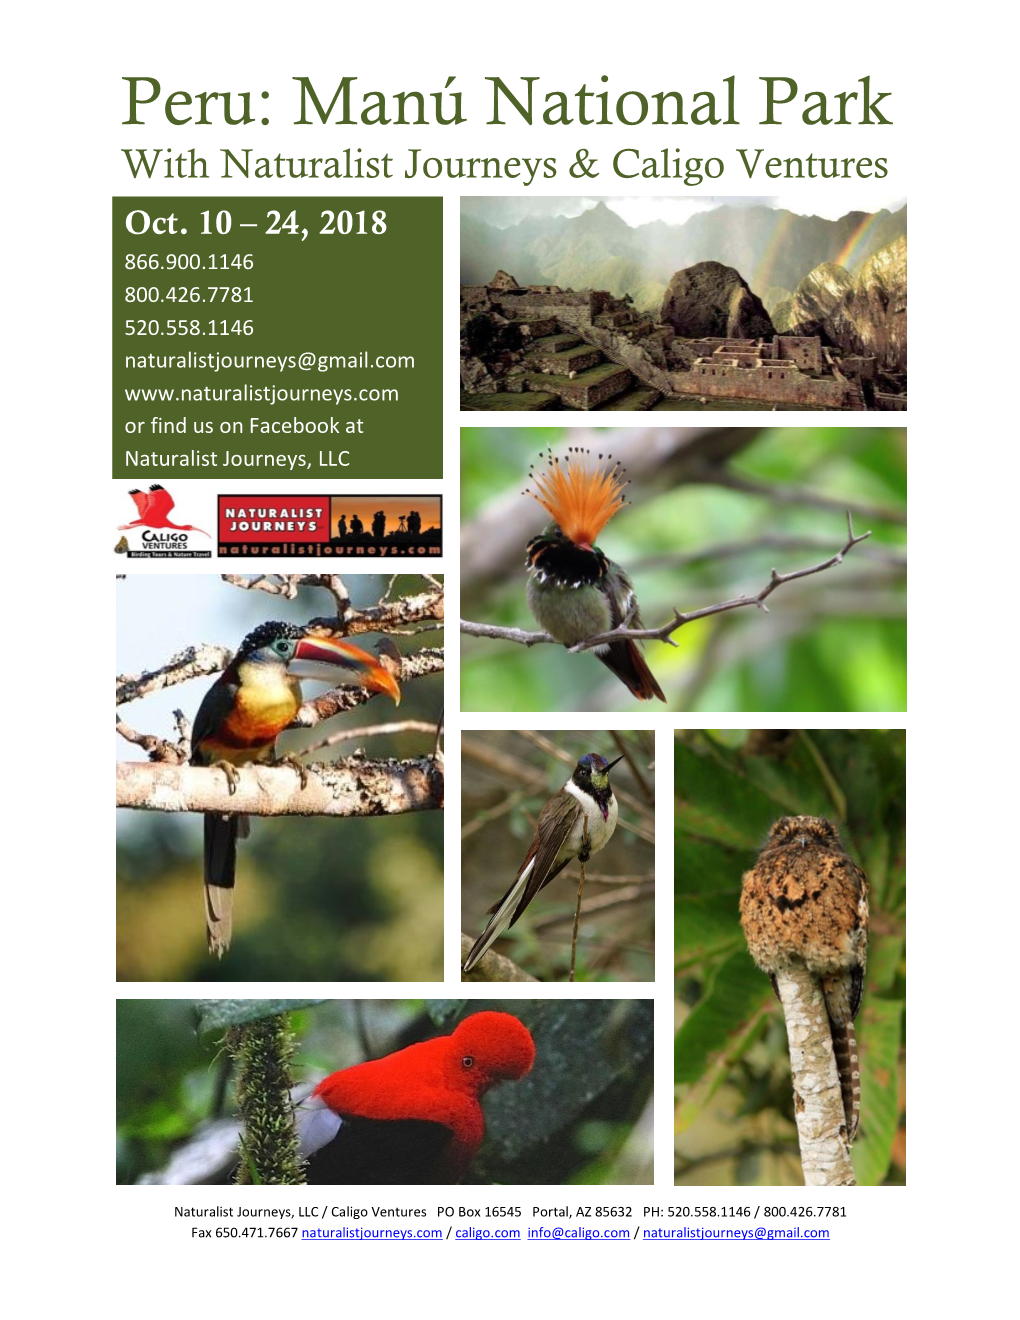 Peru: Manú National Park with Naturalist Journeys & Caligo Ventures